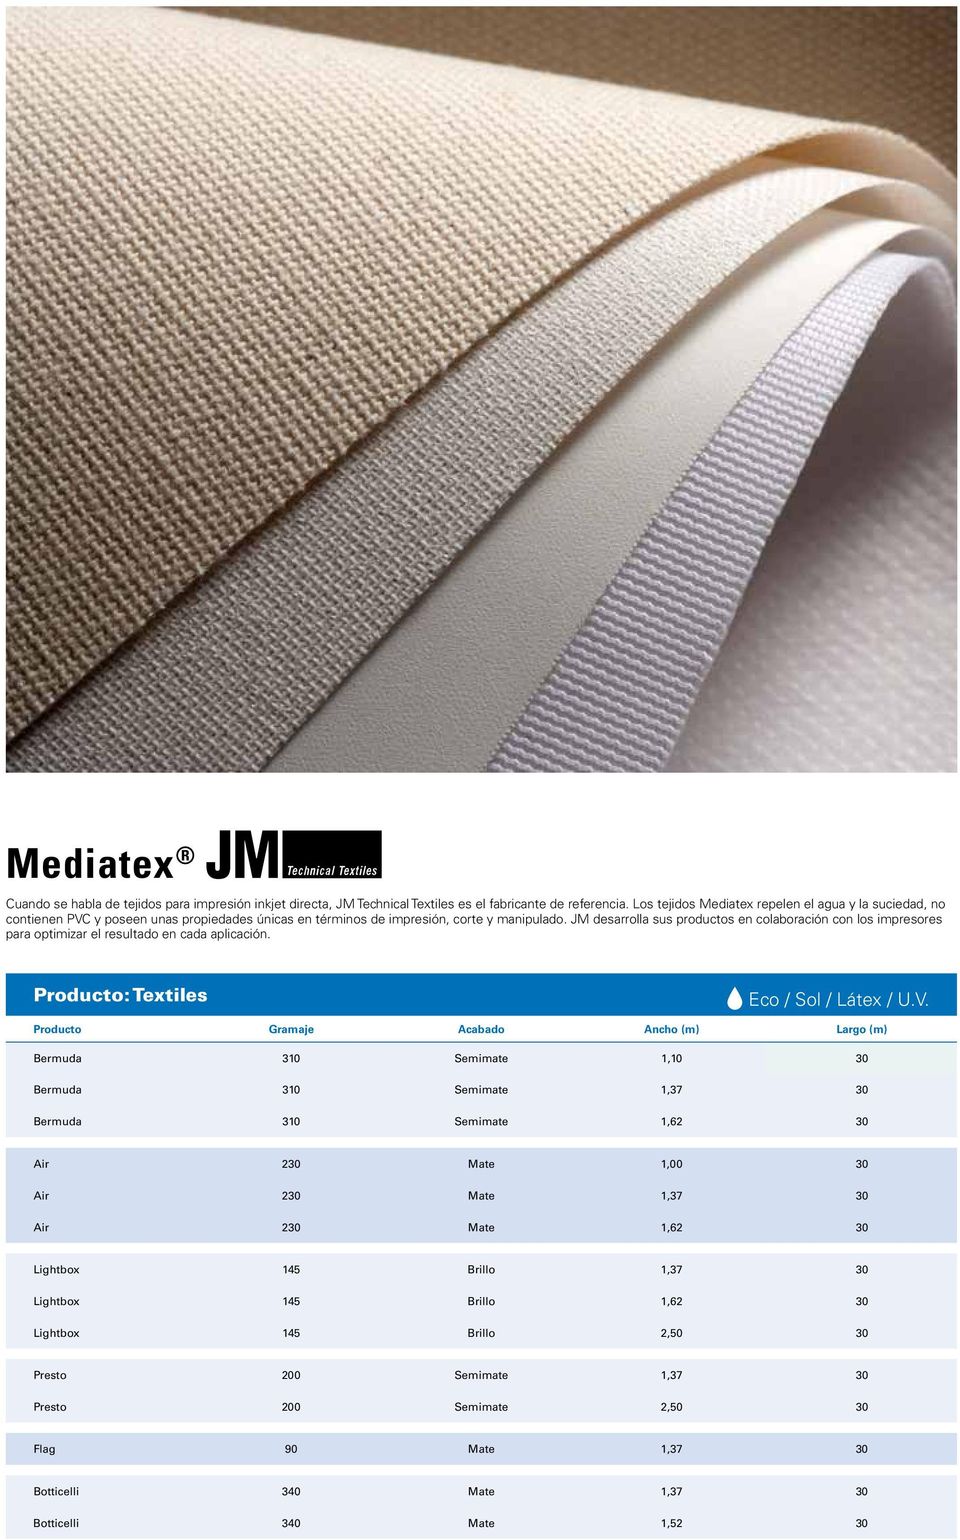 JM desarrolla sus productos en colaboración con los impresores para optimizar el resultado en cada aplicación.